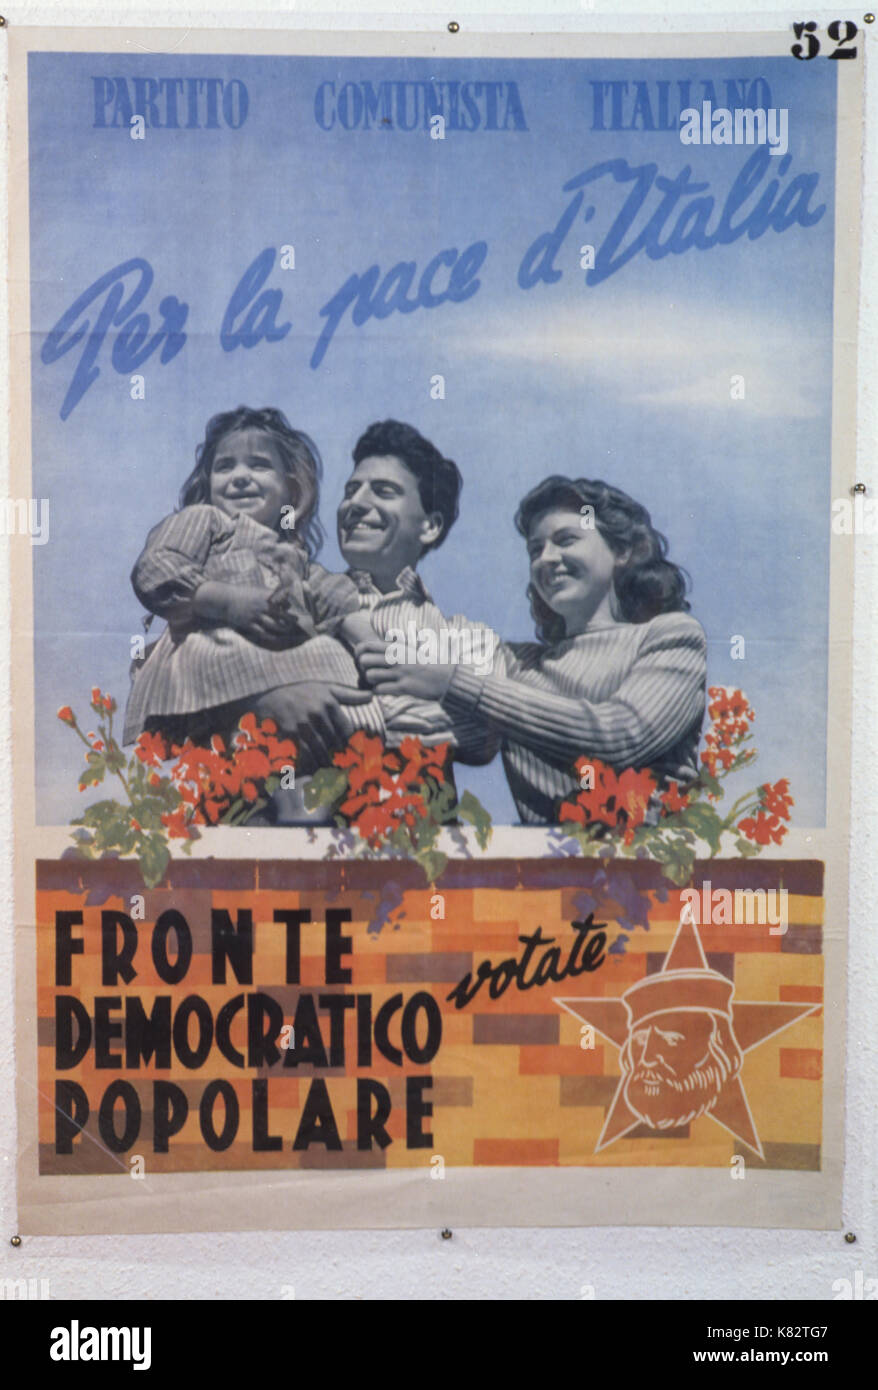 Partito comunista italiano, ha votato per la pace di Italia popolare fronte democratico, poster 1948 Foto Stock